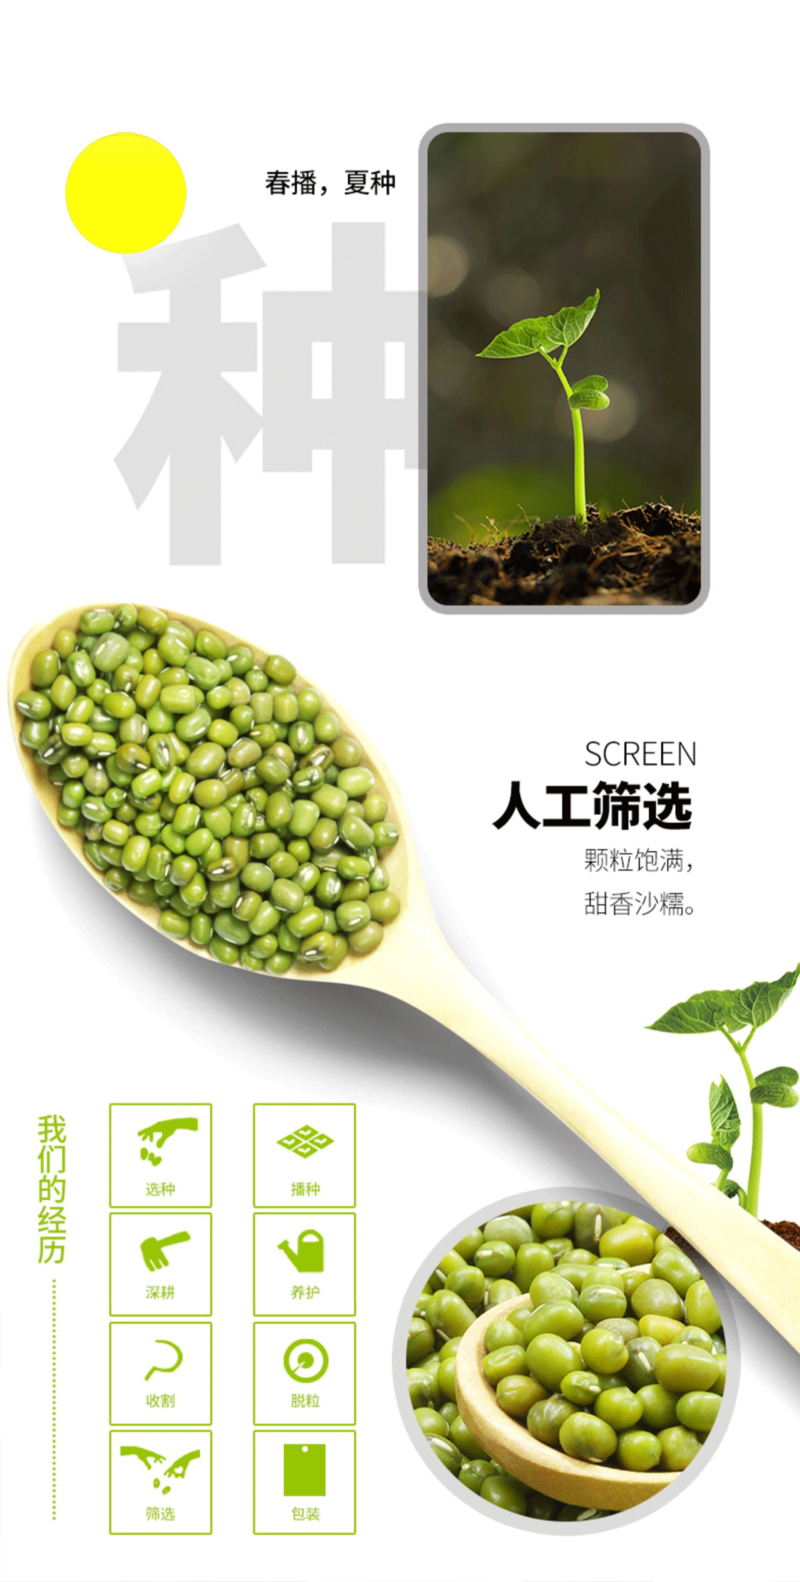 食百道 优质绿豆400g/袋 优质云南杂粮 易煮易烂 米粒饱满 天然翠绿